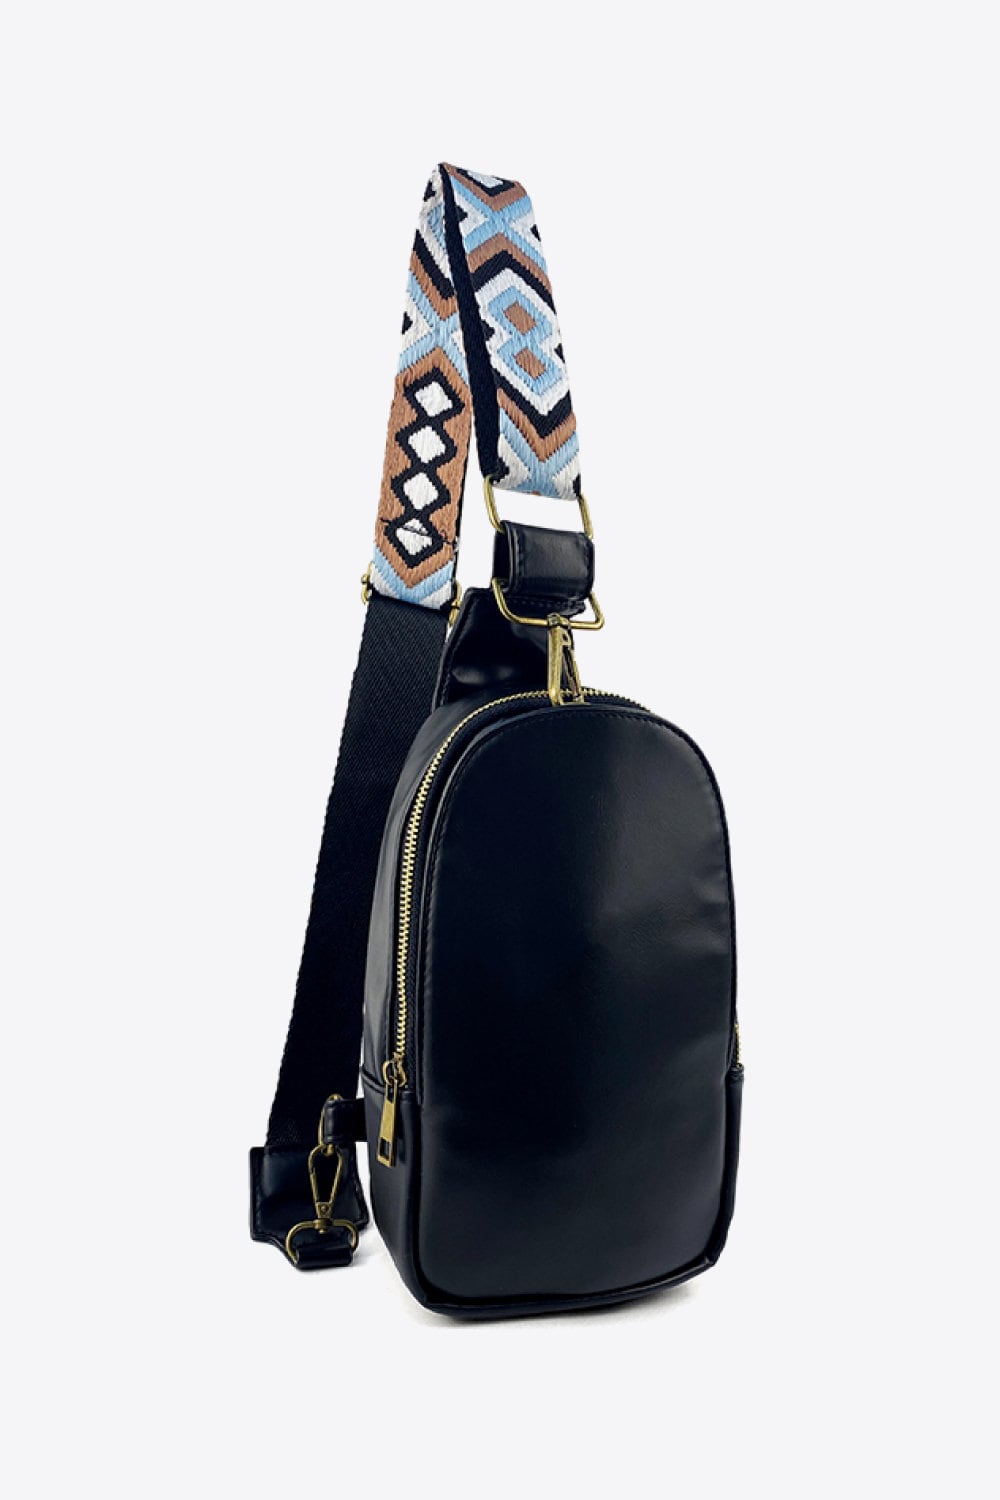 Beige / GOLD Adjustable PU Leather Bag Straps 75cm 138cm 